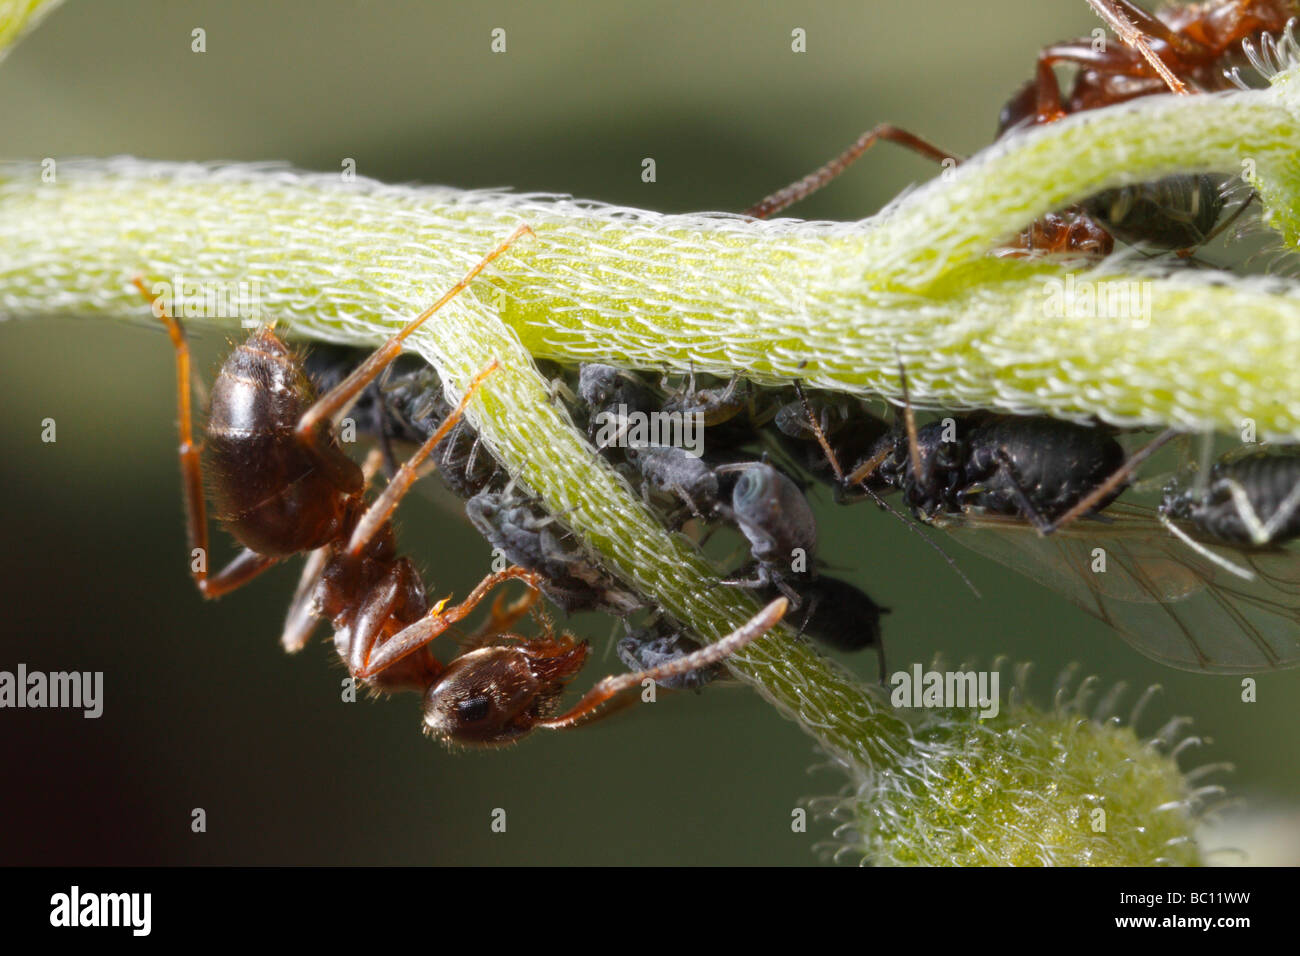 Lasius Niger, der schwarze Garten Ameisen und Blattläuse. Die Ameise ist die Blattläuse Melken. Die Blume ist ein Vergissmeinnicht Myosotis. Stockfoto